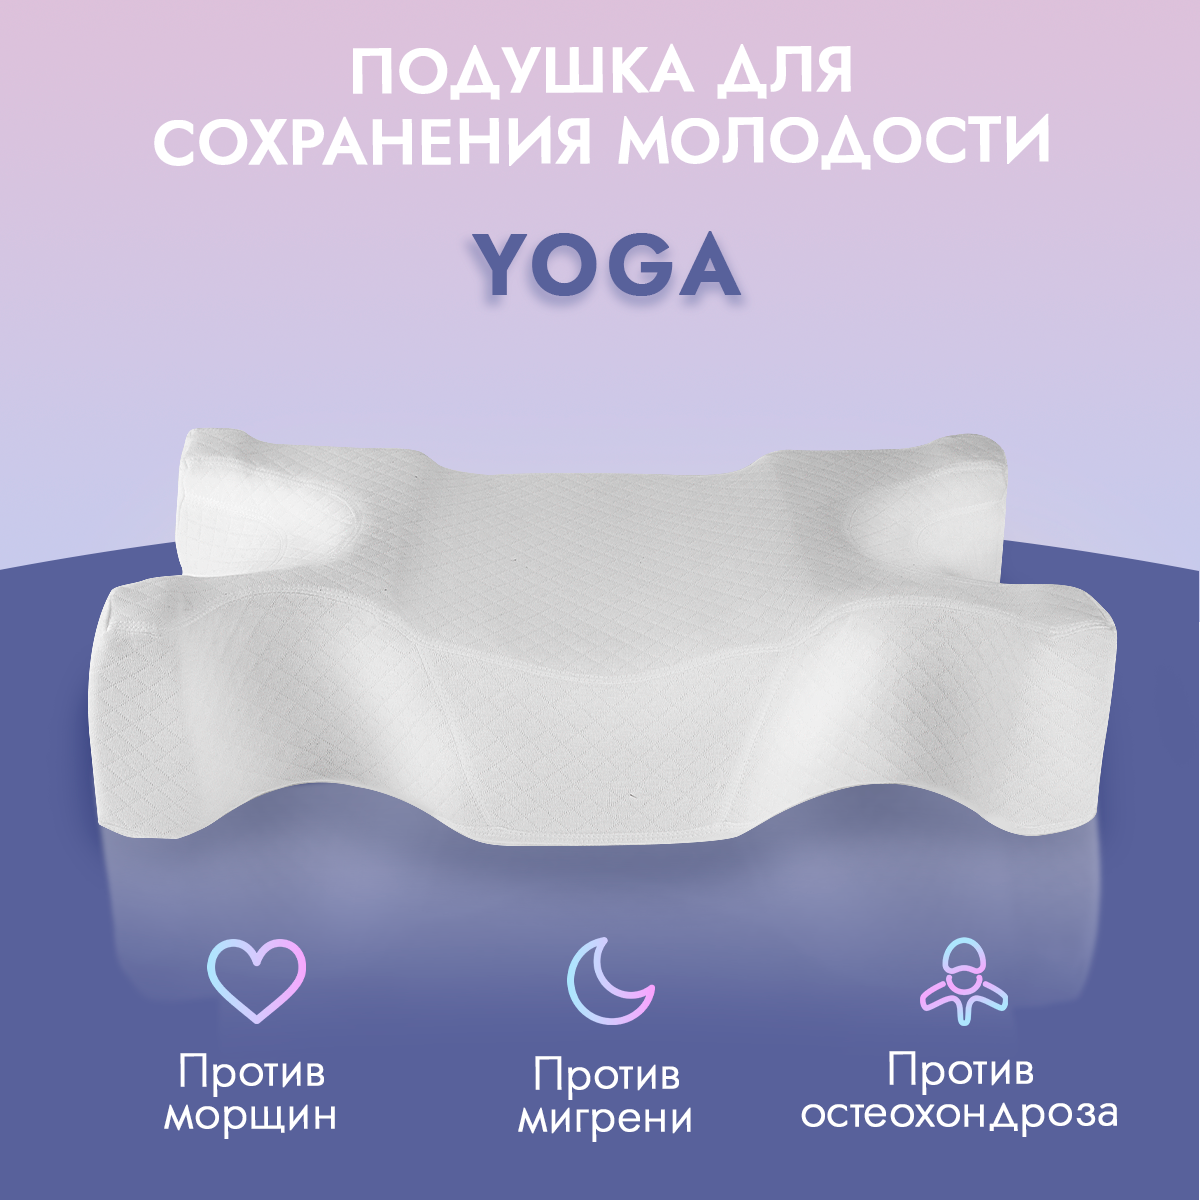 Подушка анатомическая для сна Anti-Age, серия Yoga